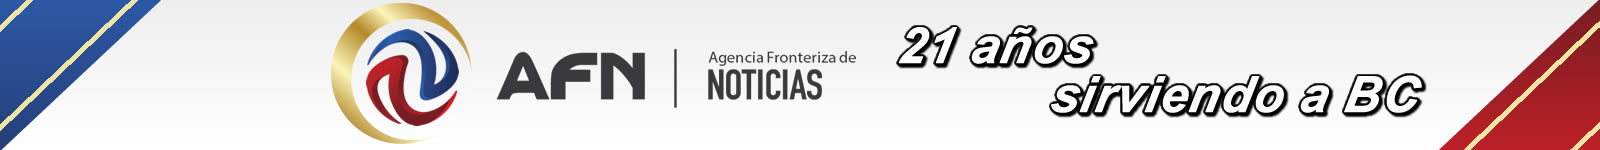 Agencia Fronteriza de Noticias